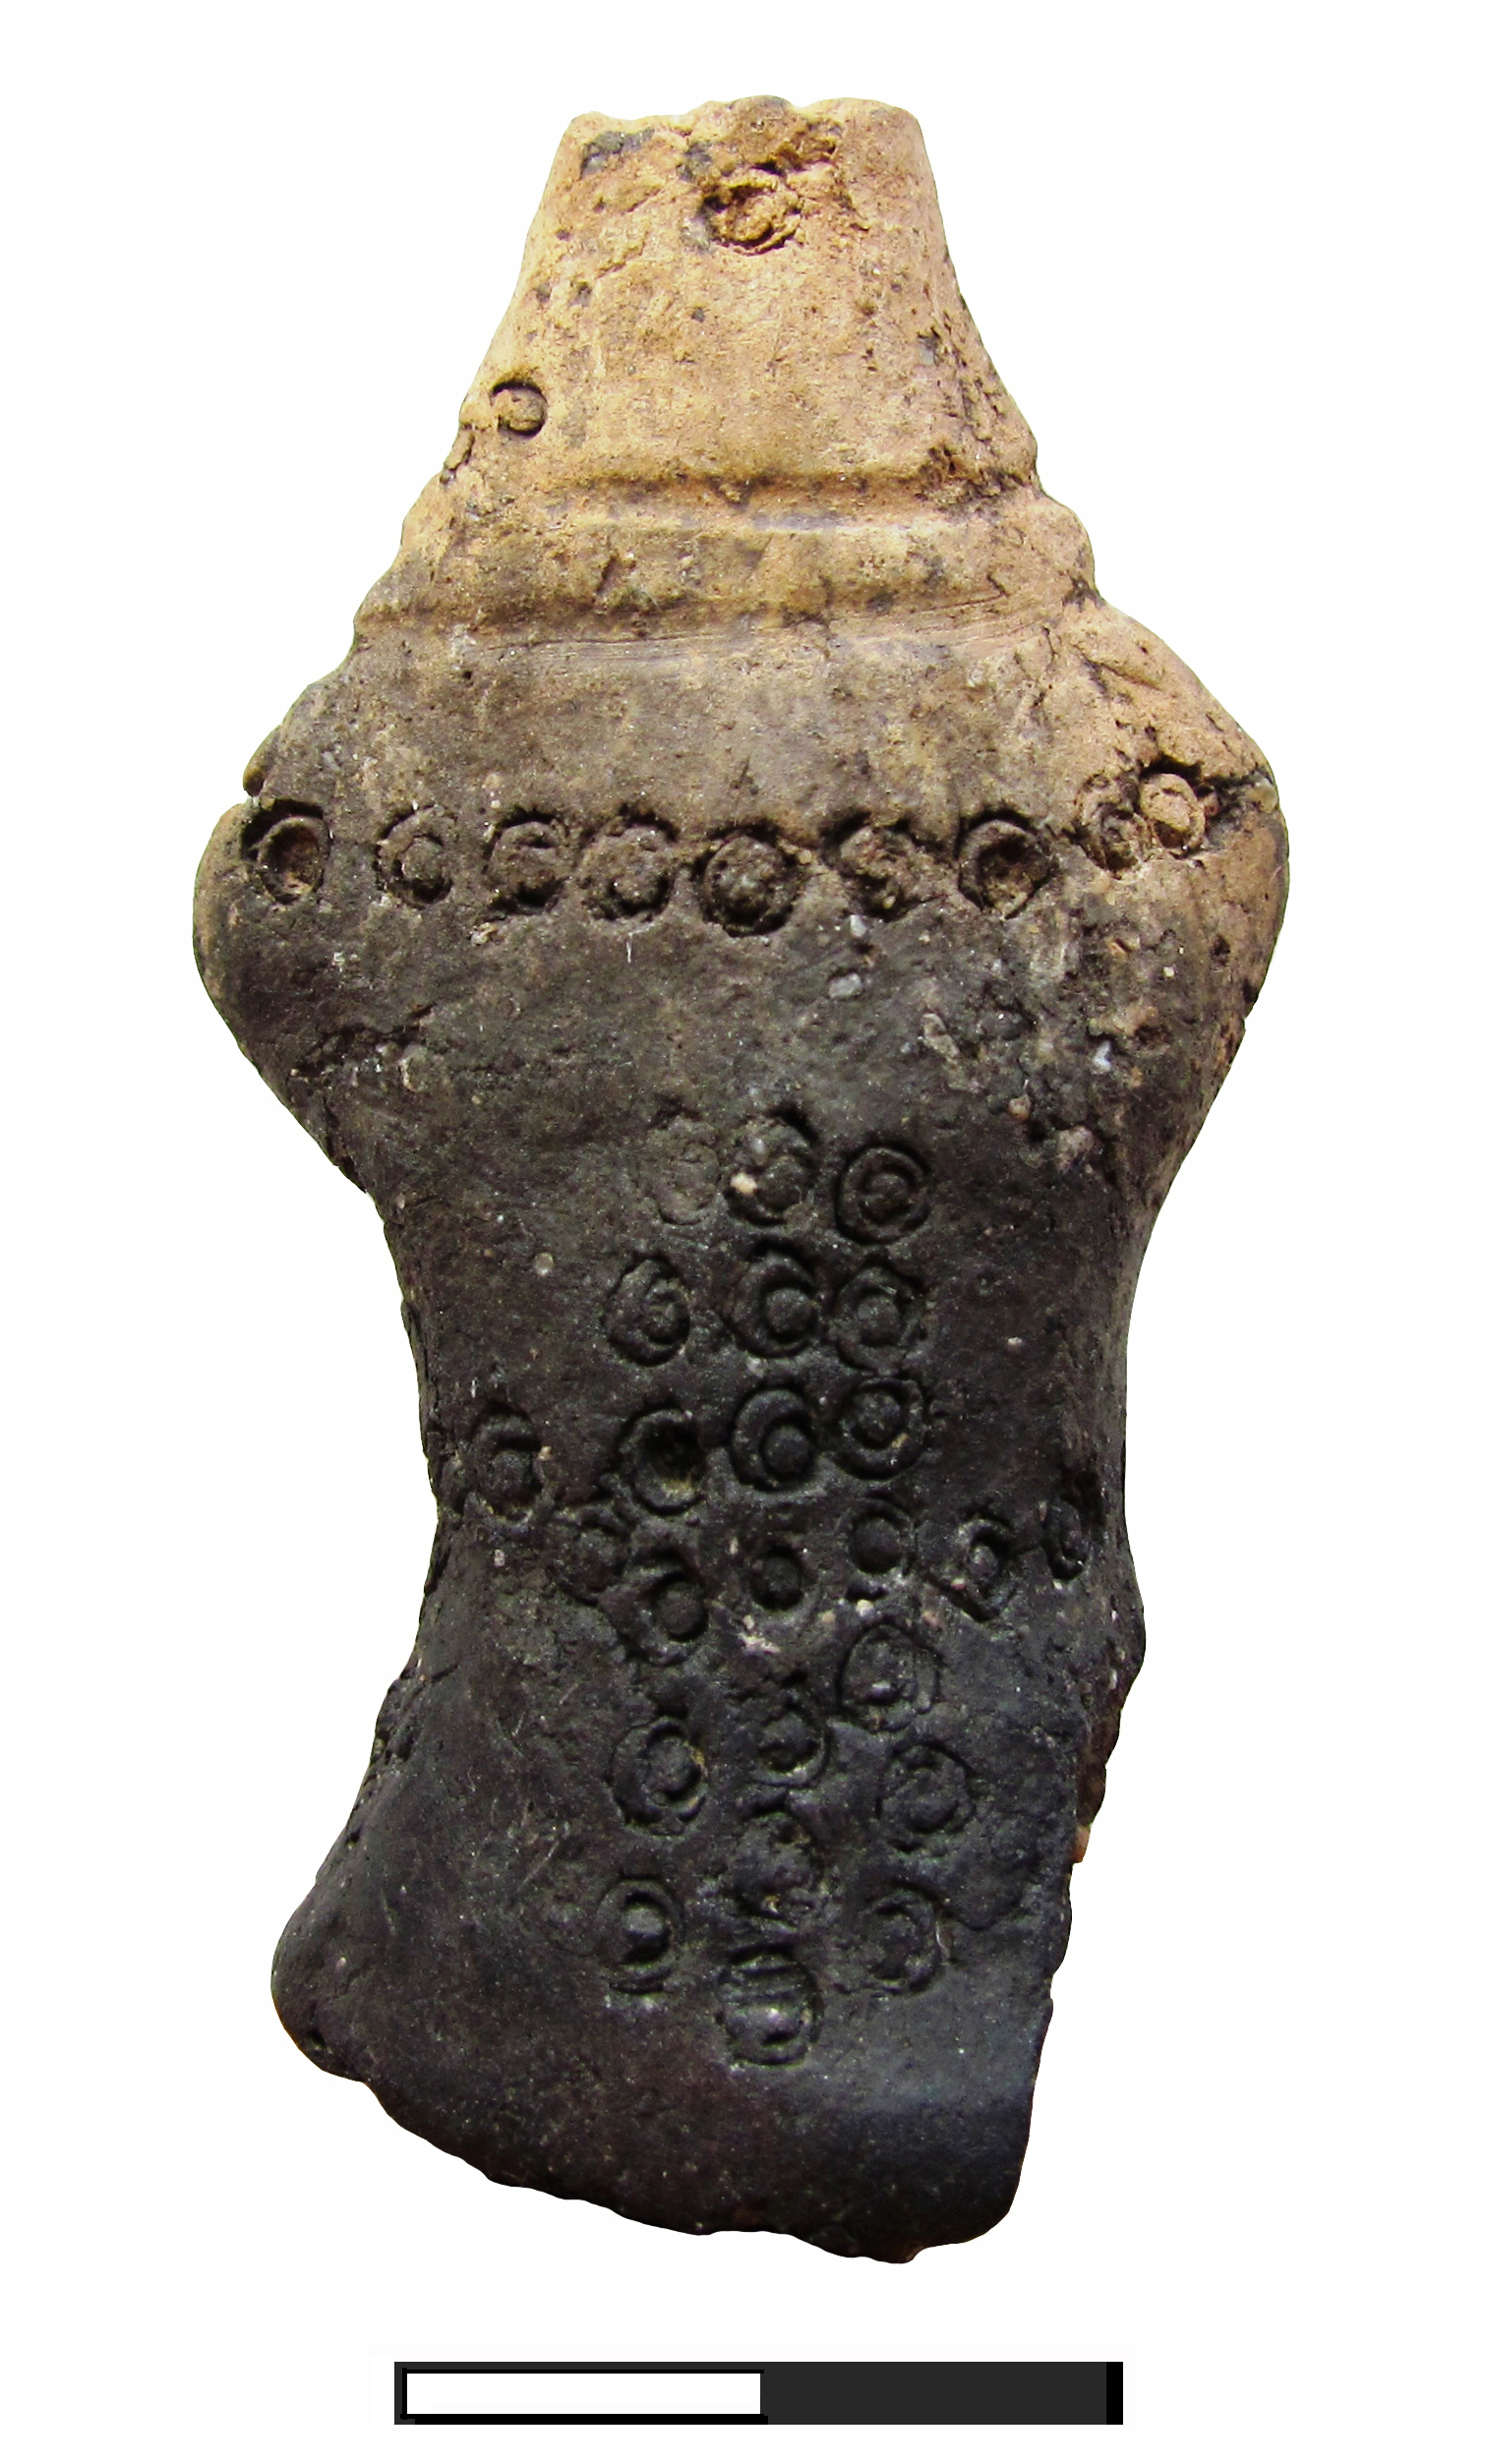 MCDR Deva prezintă o Figurină antropomorfă, din epoca bronzului